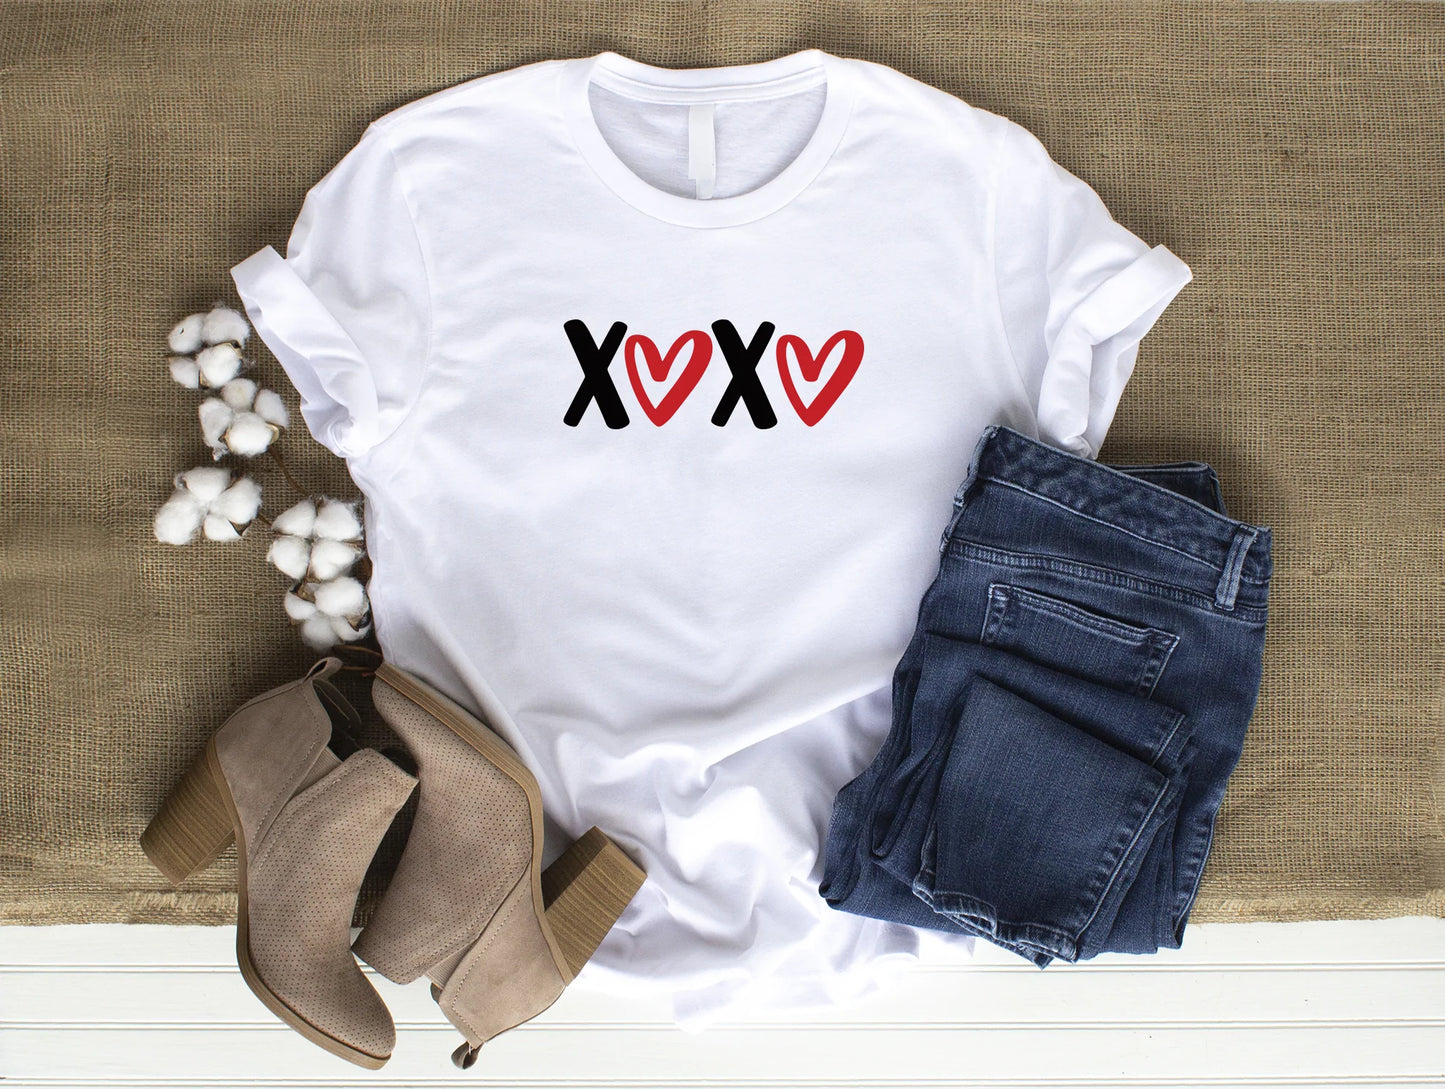 XOXO Plain Cute Comfy Valentine's Day White T-Shirt Medium